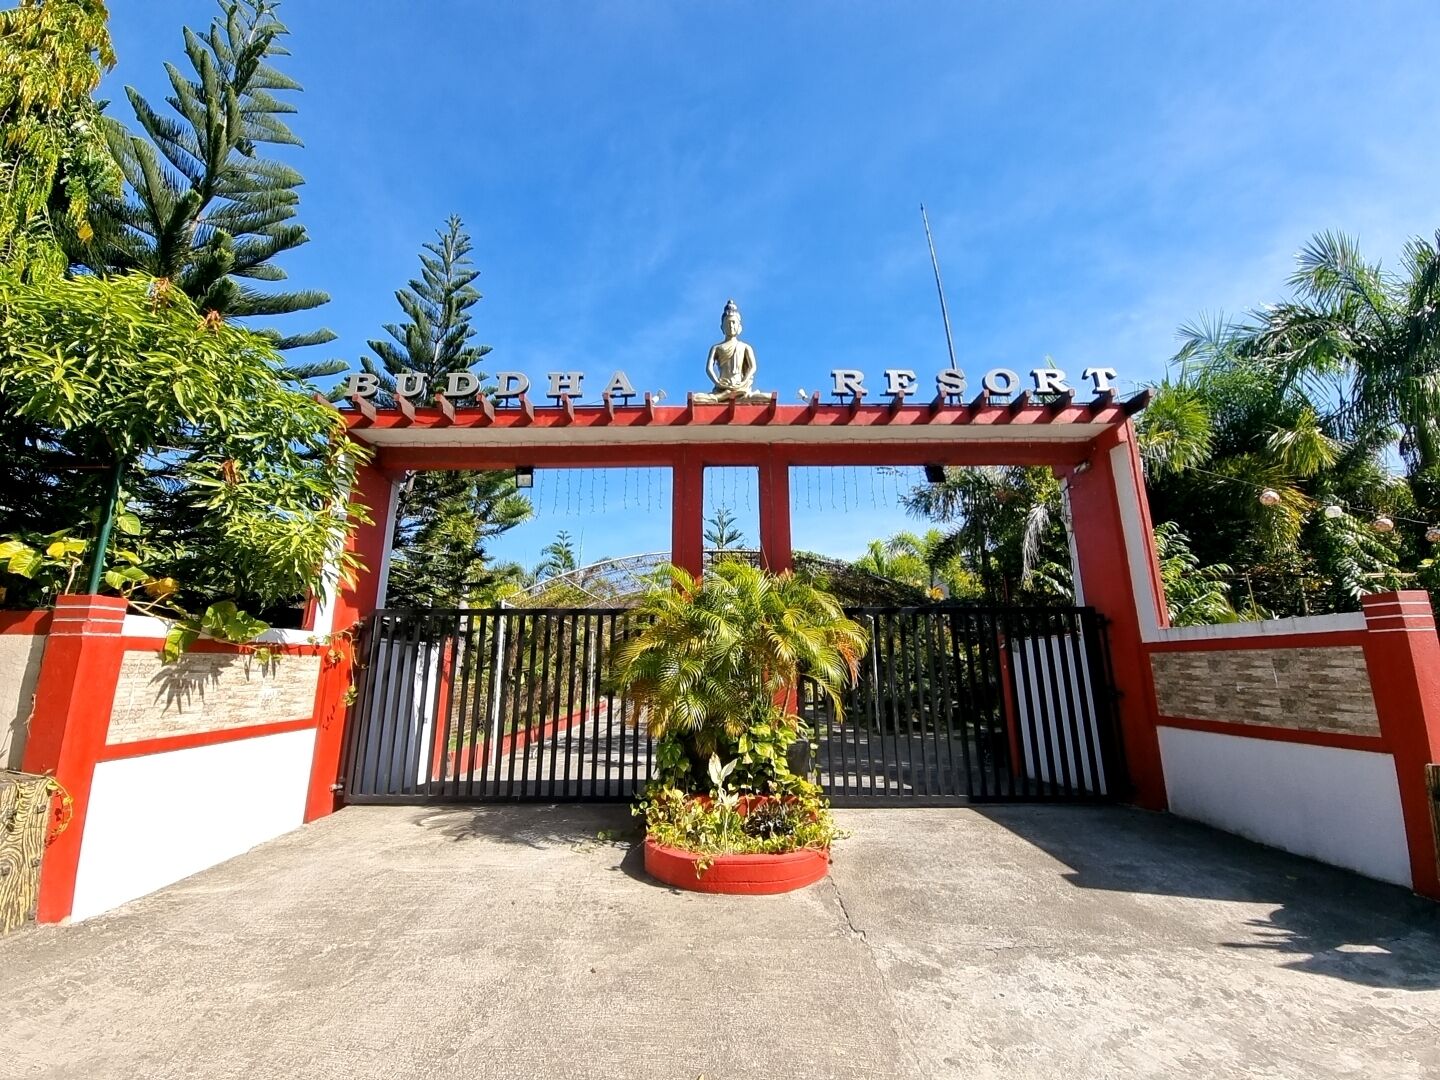 Buddha Resort image 1